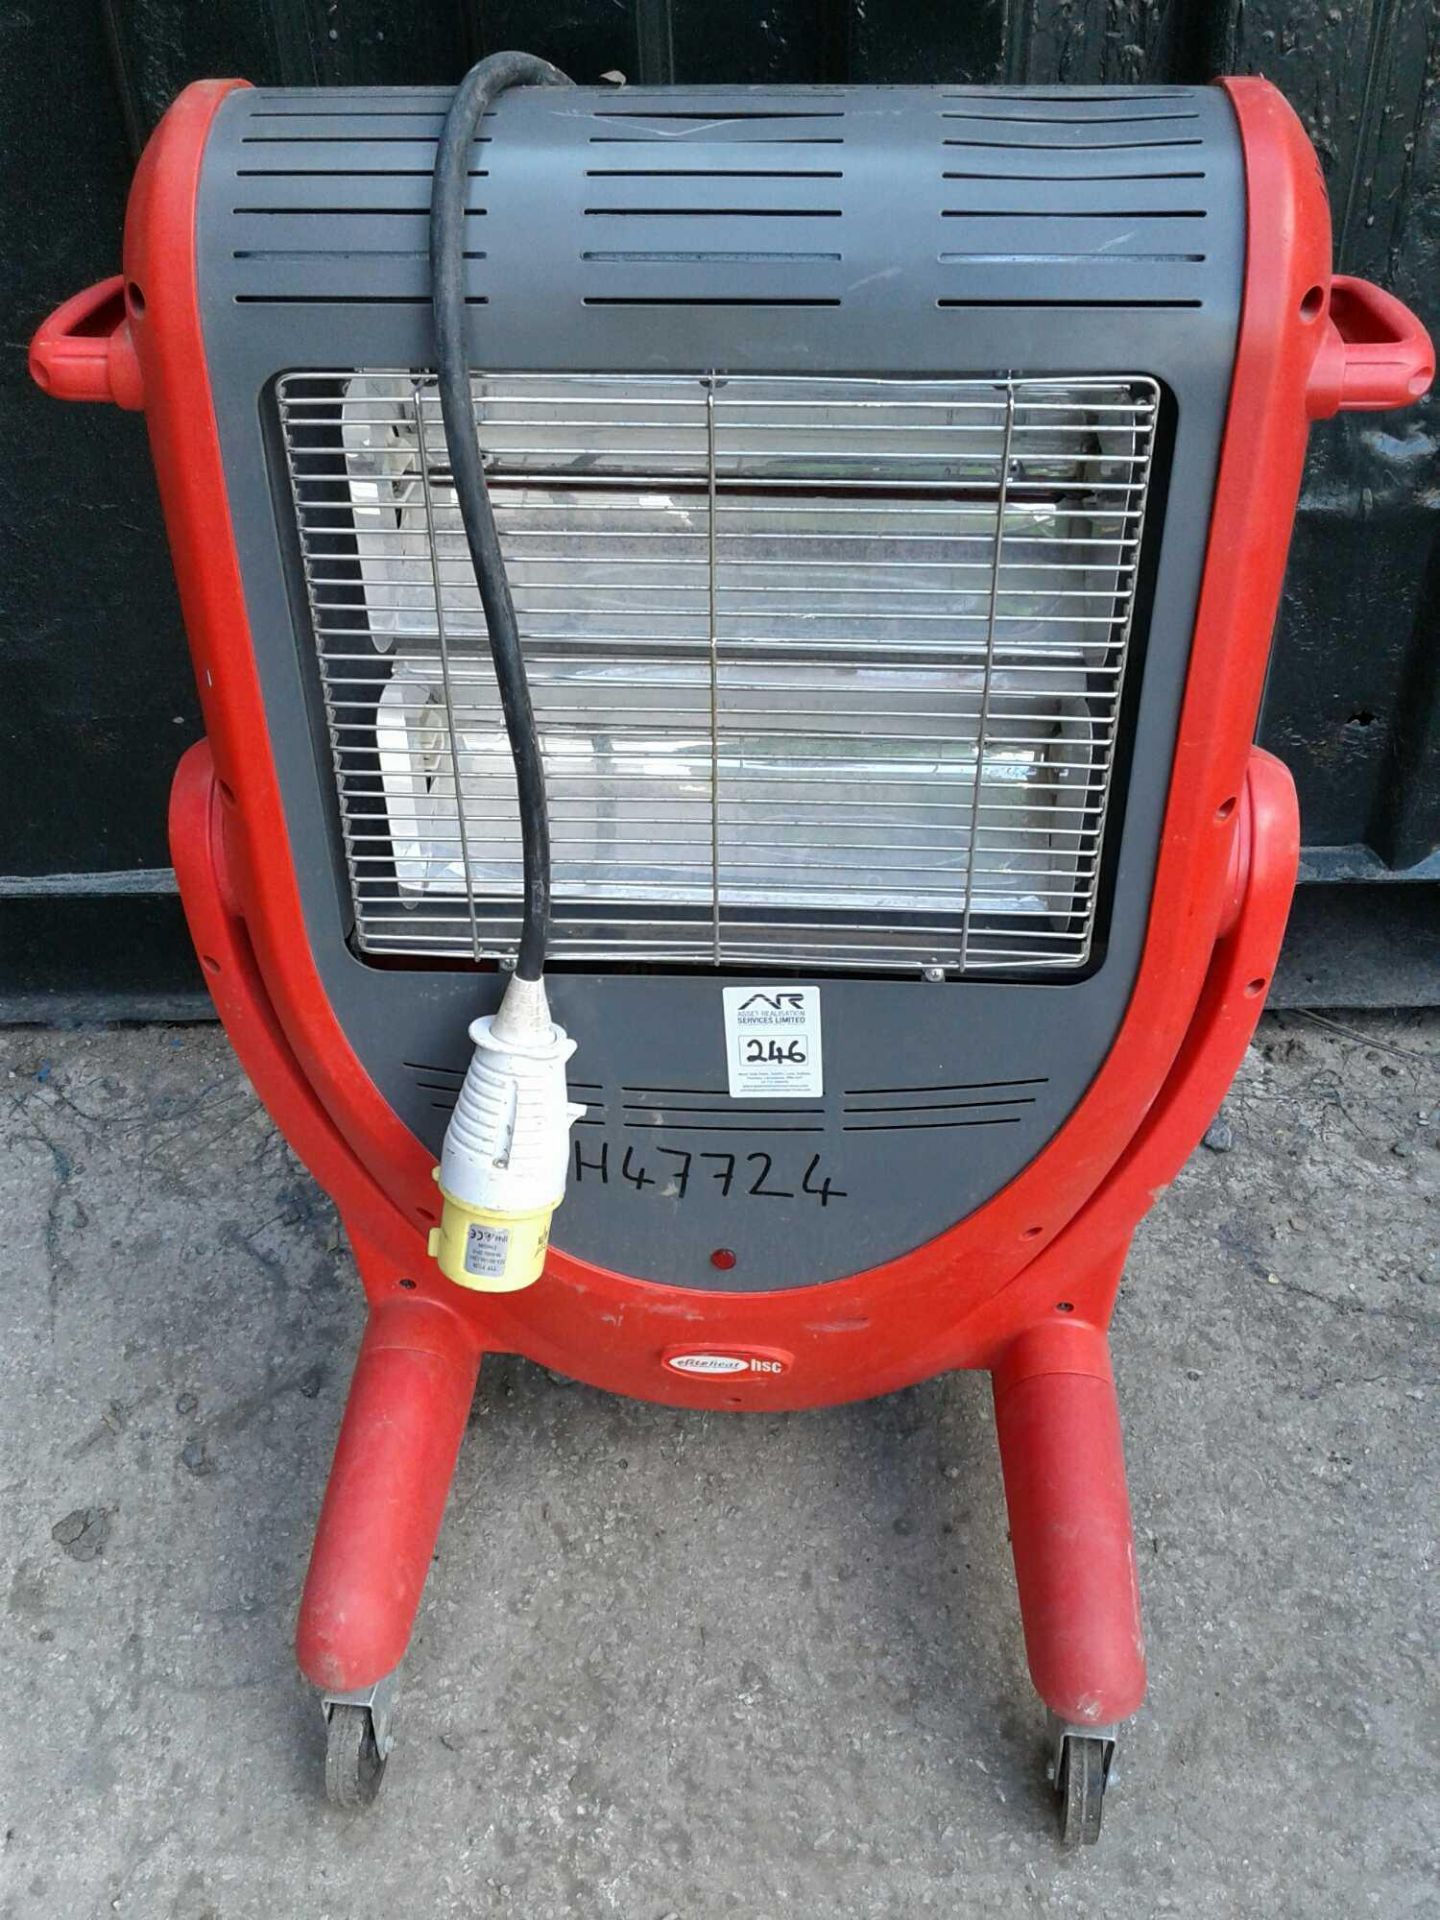 Elite red rad heater 110v 32 amp - Image 2 of 2